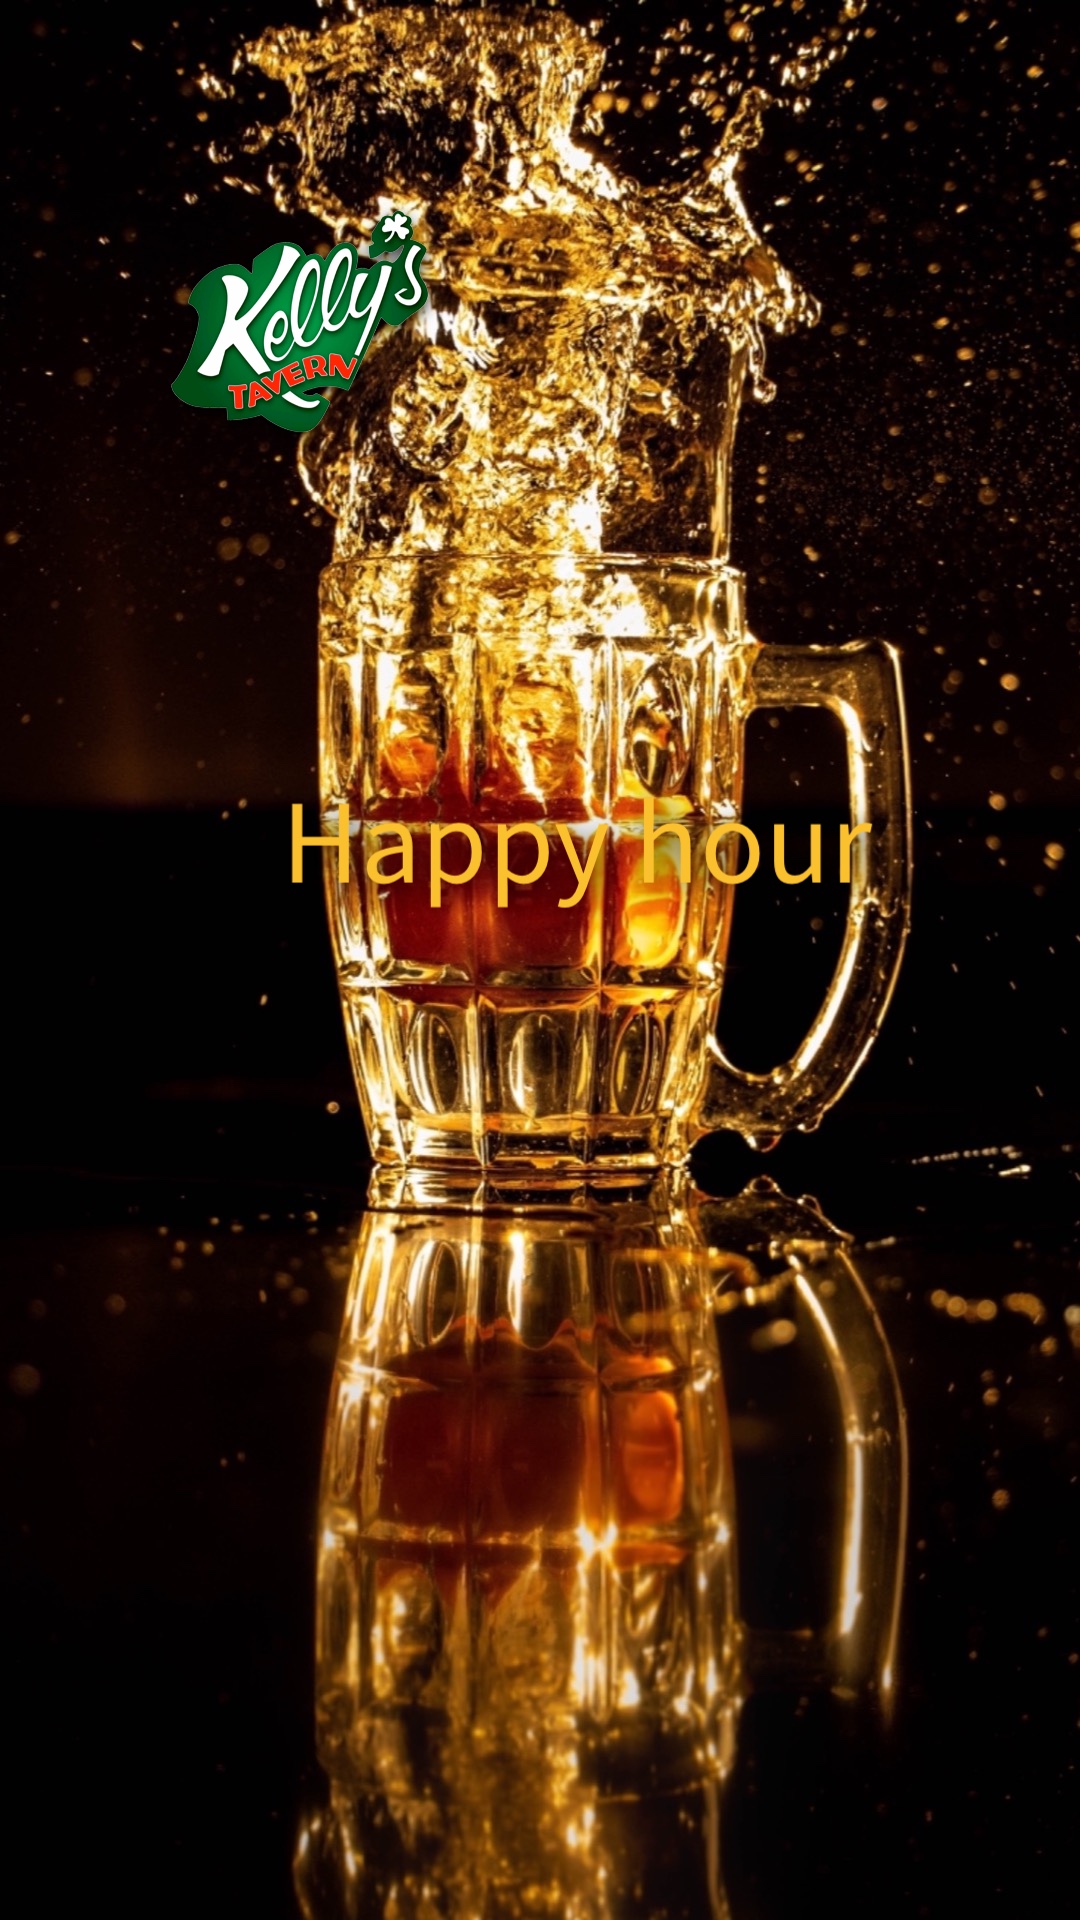 #Drinkware #Liquid #Tableware #Stemware #Amber #Barware #Fluid #Beer #Drink #Beer glass